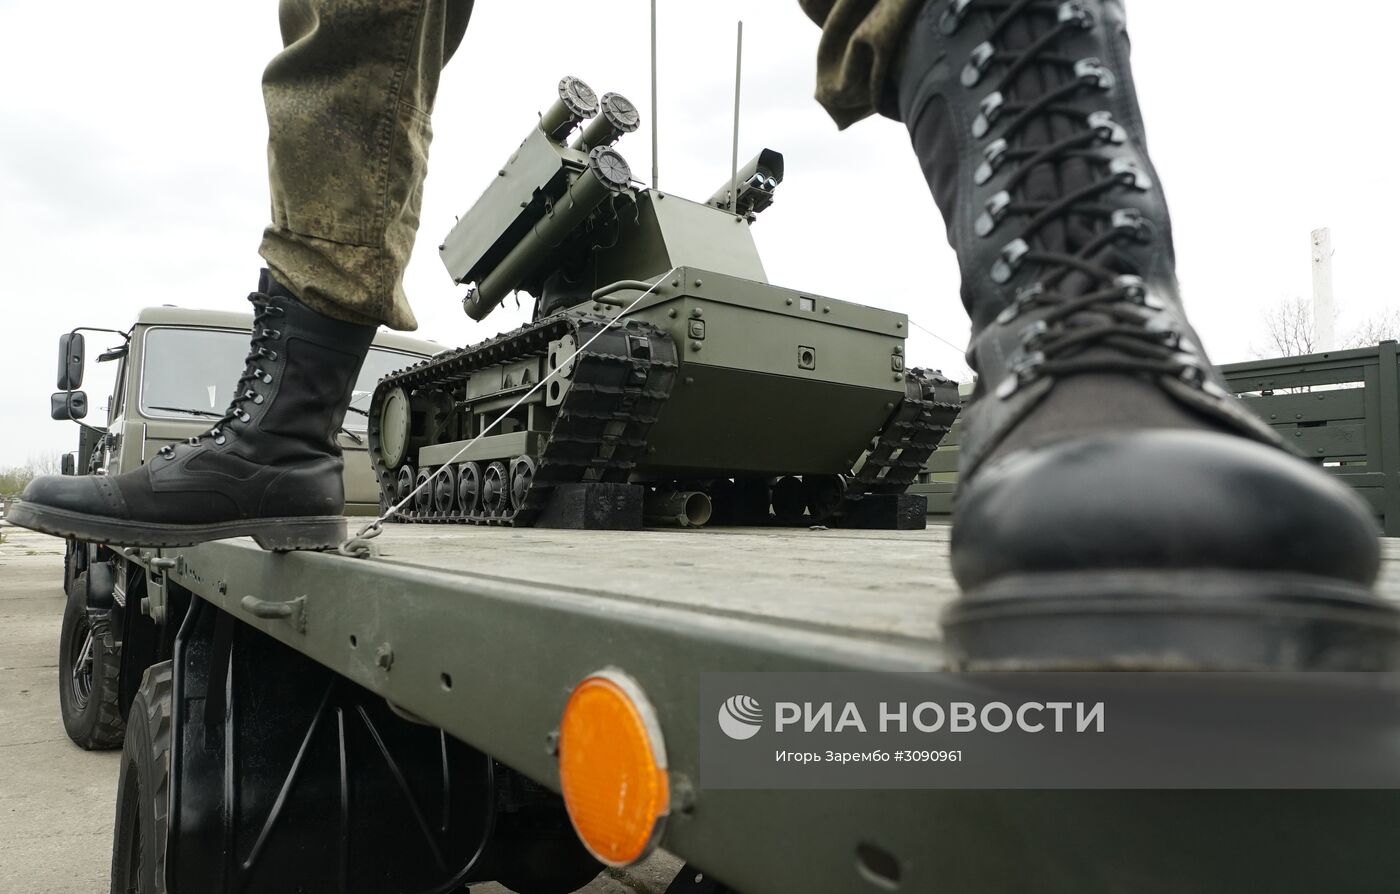 Подготовка боевой техники к участию в параде Победы в Калининграде